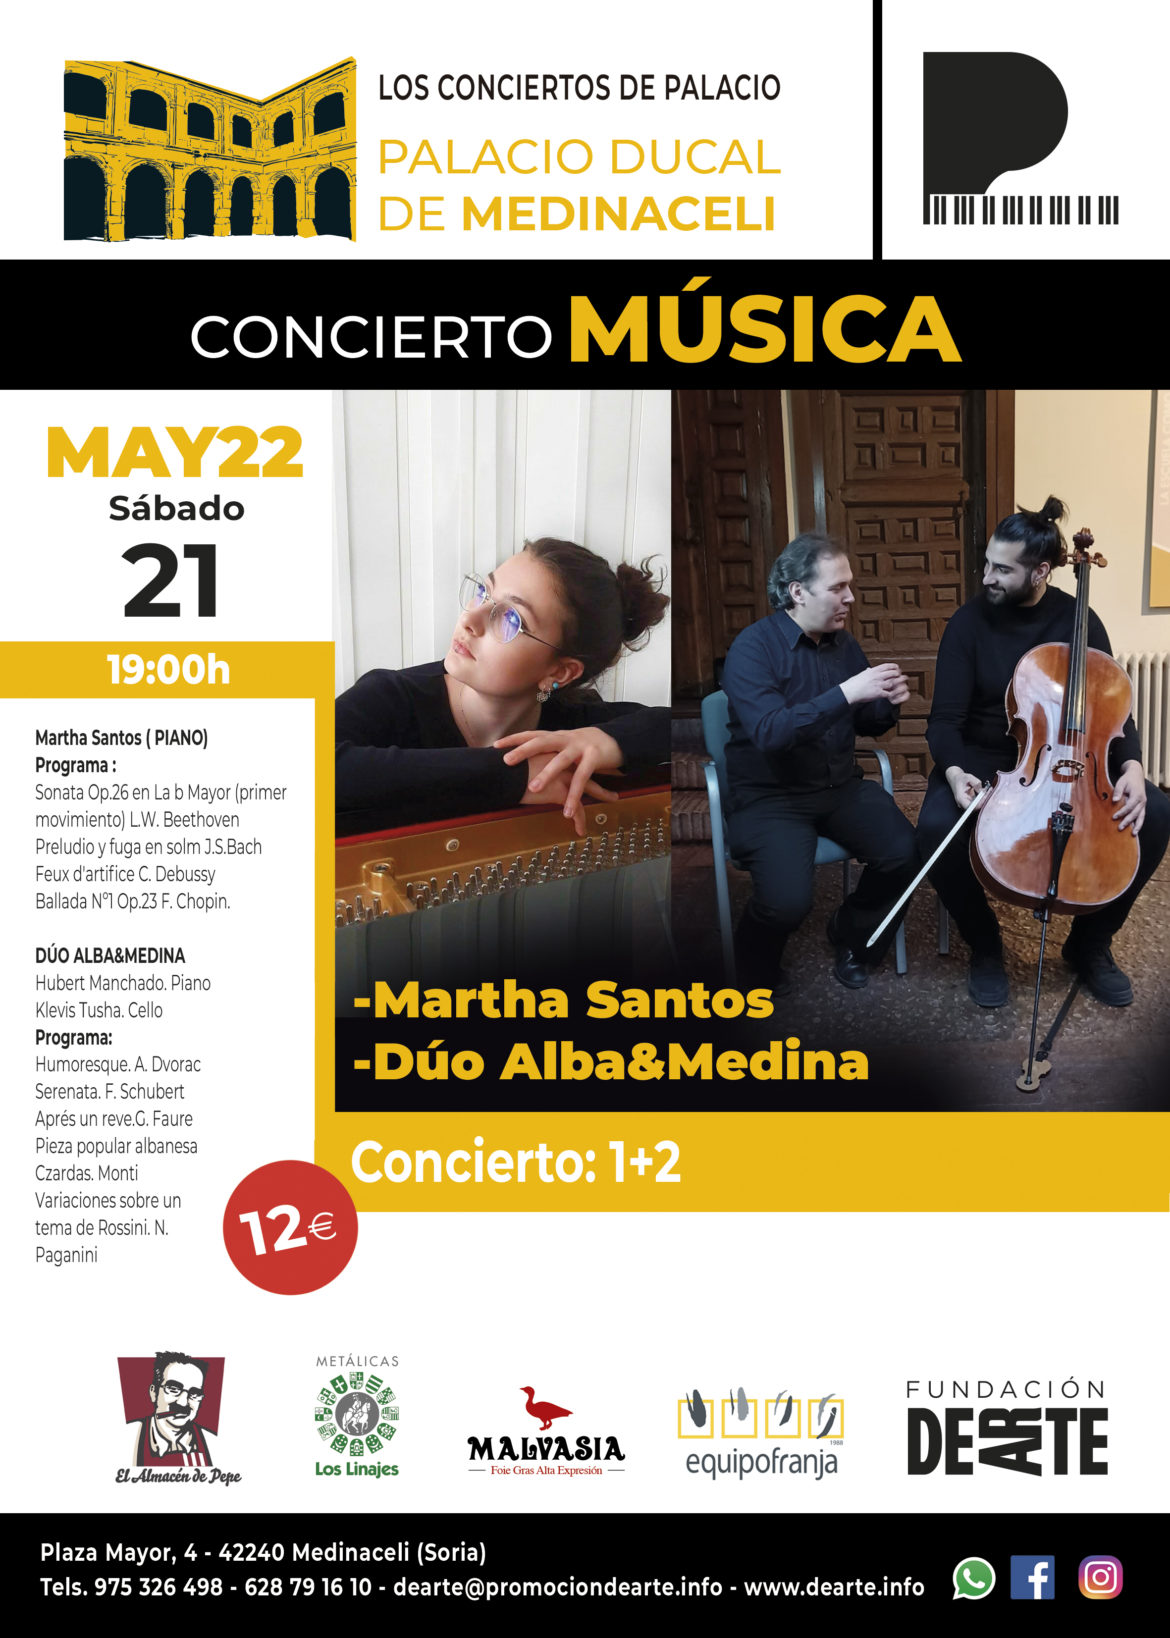 Concierto de música 1+2 : Martha Santos y Dúo Alba&Medina